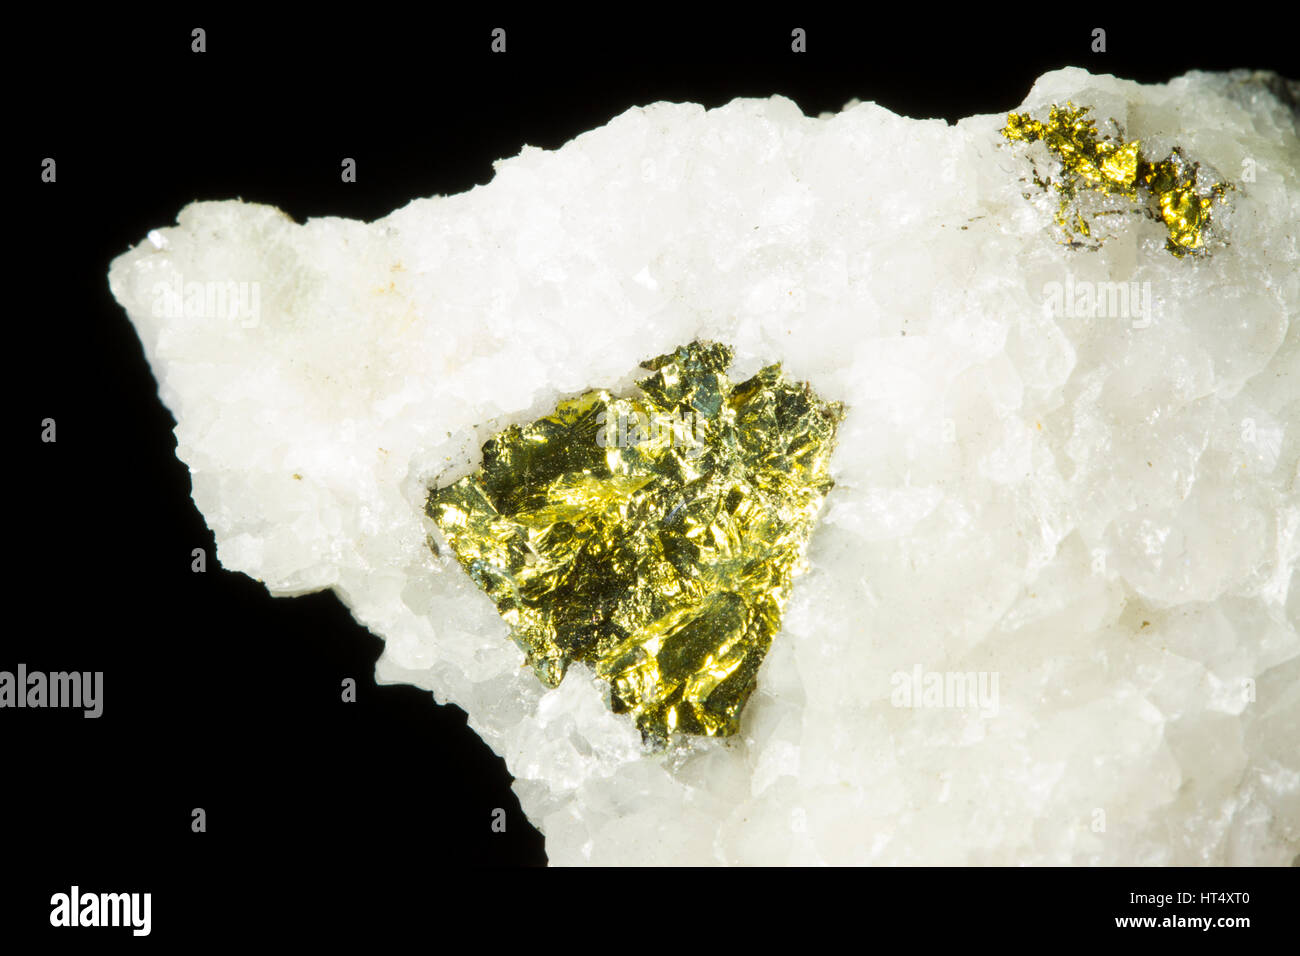 La chalcopyrite (sulfure de cuivre) dans la région de quartz. À partir de la mine Hyddgen, Powys, Pays de Galles. Banque D'Images